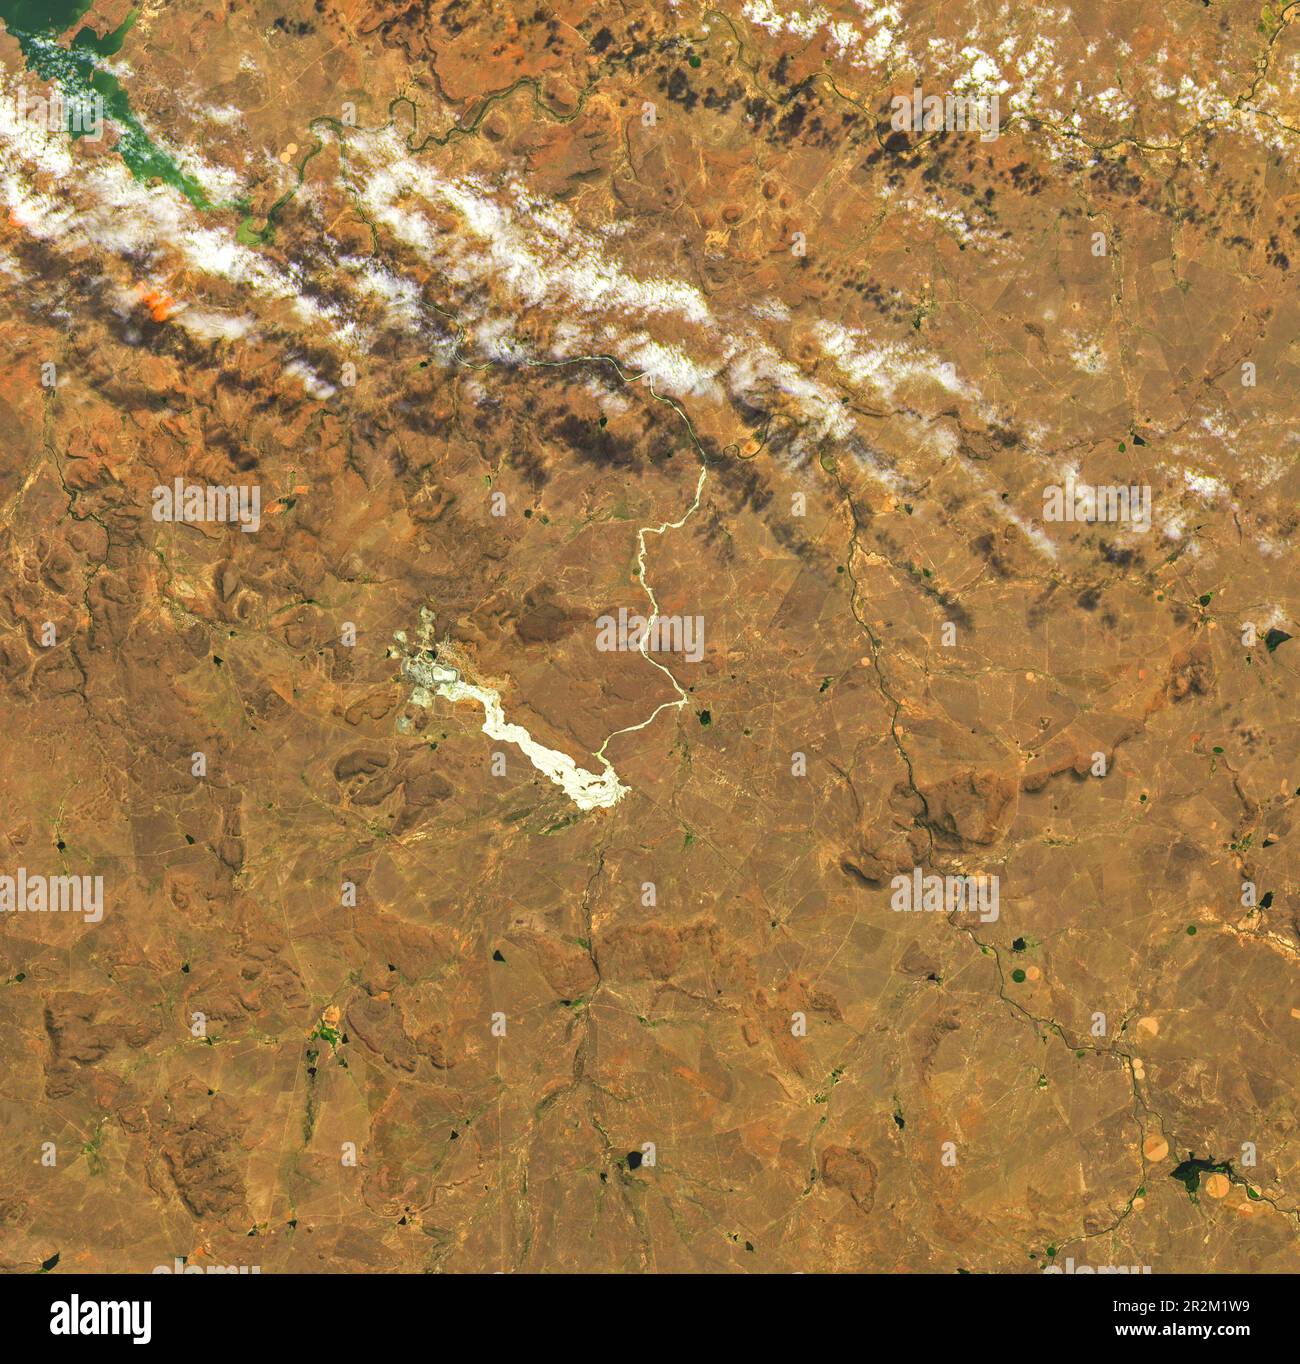 Vista aerea del crollo della diga e dei residui di scarto risultanti a Jagersfontein, Sudafrica il 11 settembre 2022 e residui di scarto risultanti Foto Stock